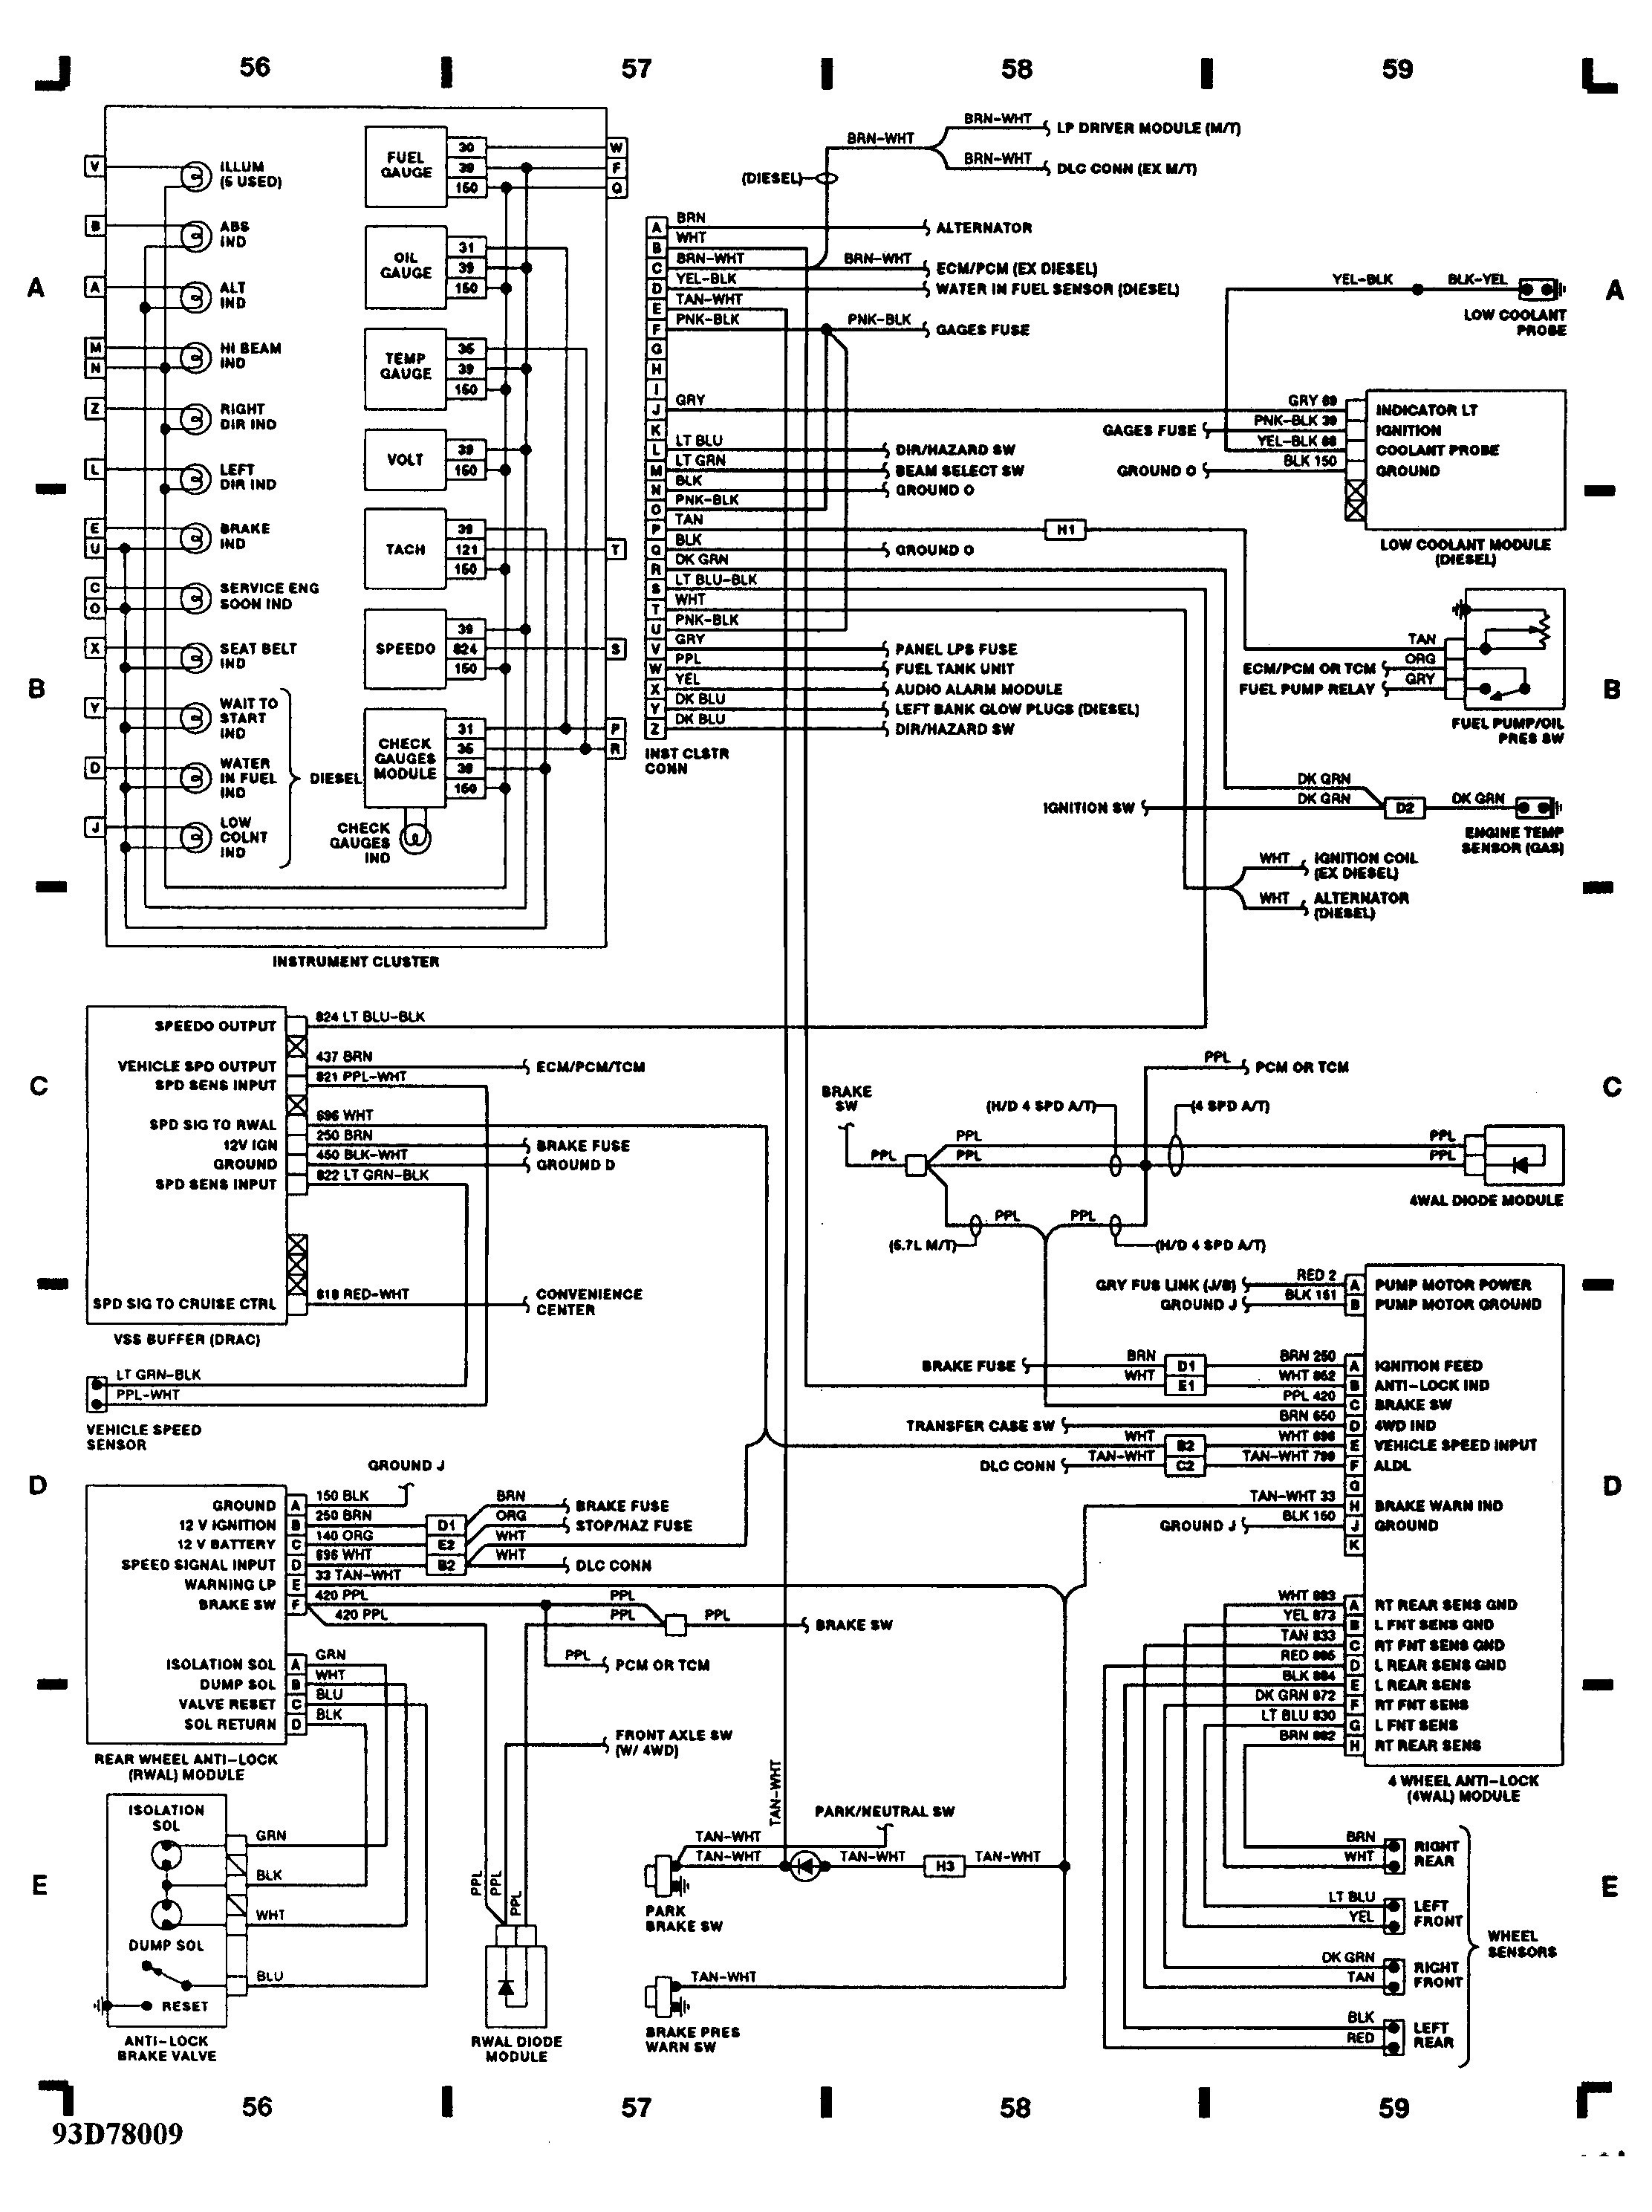 3800 Series 2 Engine Diagram 2002 Ls1 Engine Diagram Another Blog About Wiring Diagram • Of 3800 Series 2 Engine Diagram